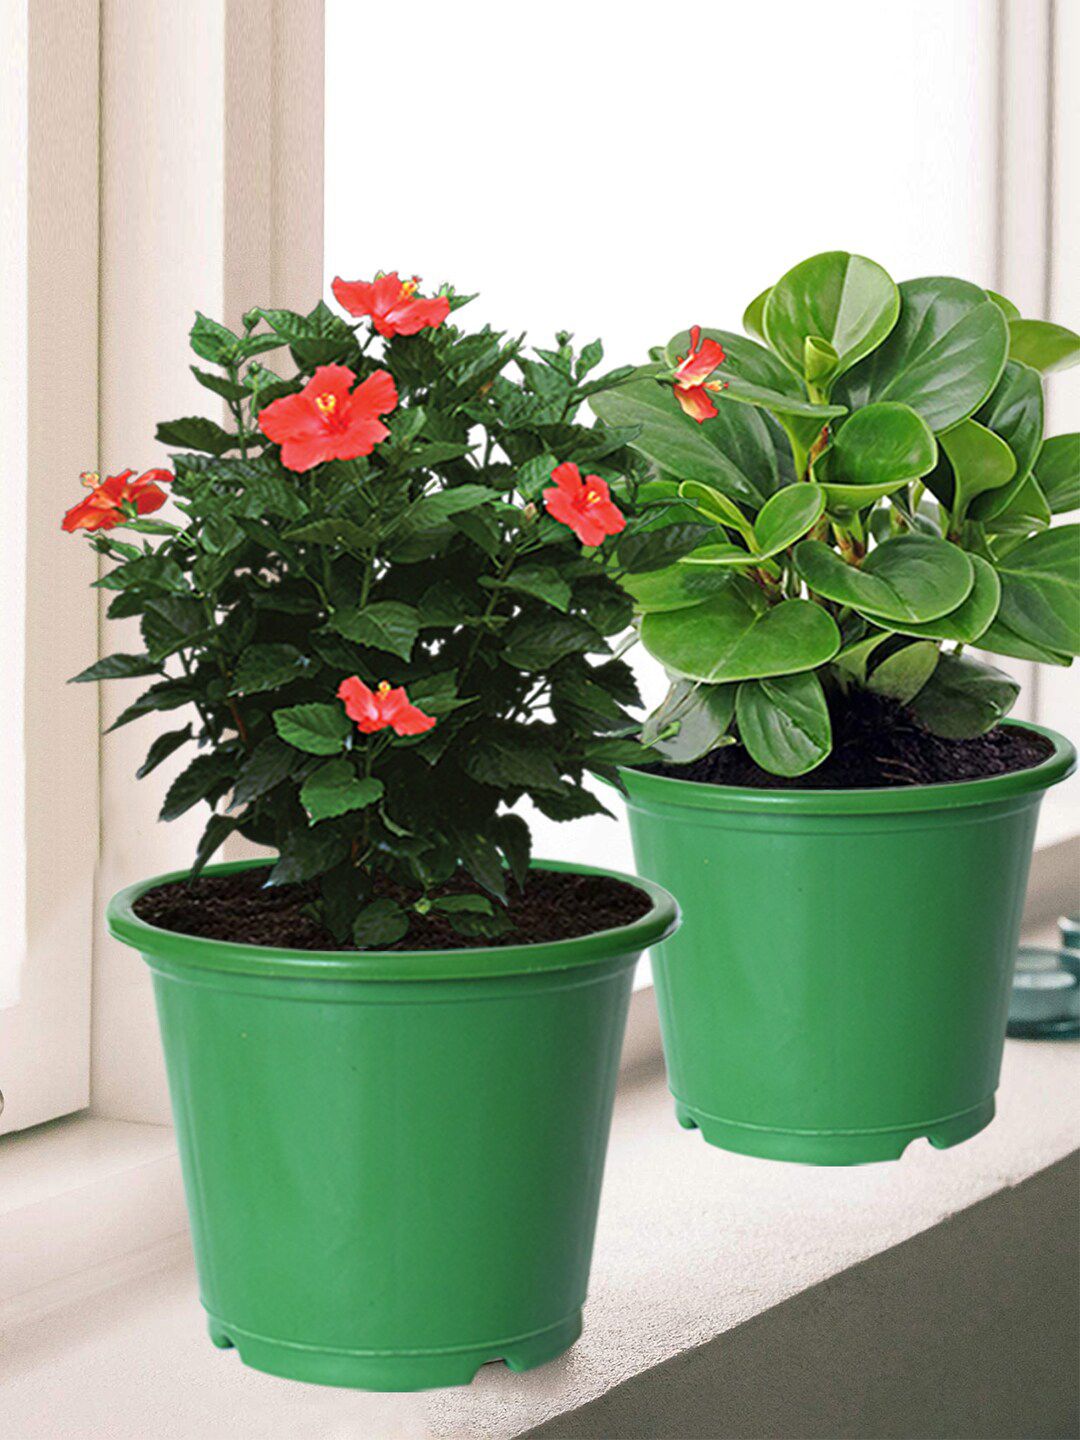 Kuber Industries Pack Of 5 Green Plastic Garden Flower Pots Price in India